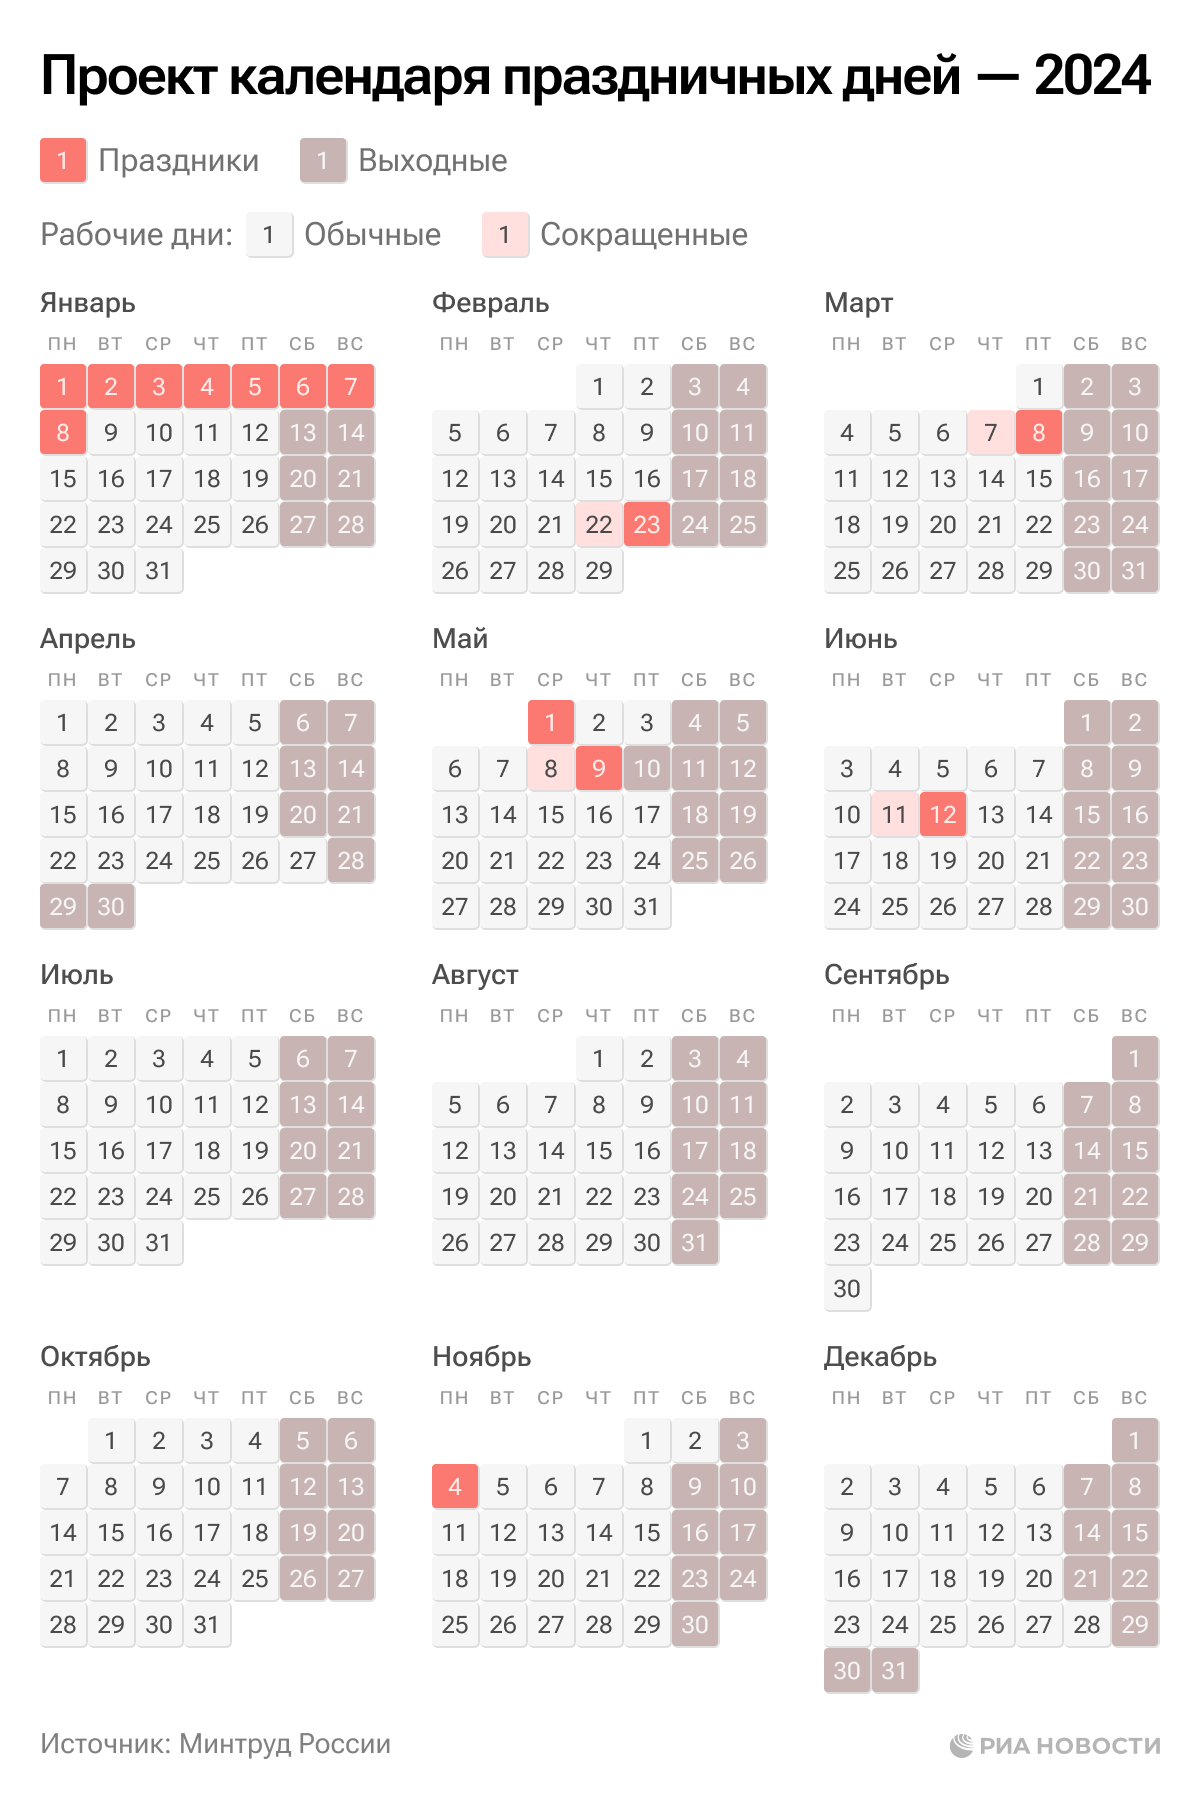 Наурыз сколько дней отдыхаем 2024 в казахстане. Календарь праздников. Выходные и праздничные дни в 2024 году в России. Календарь рабочих дней. Календарь праздничных дней.